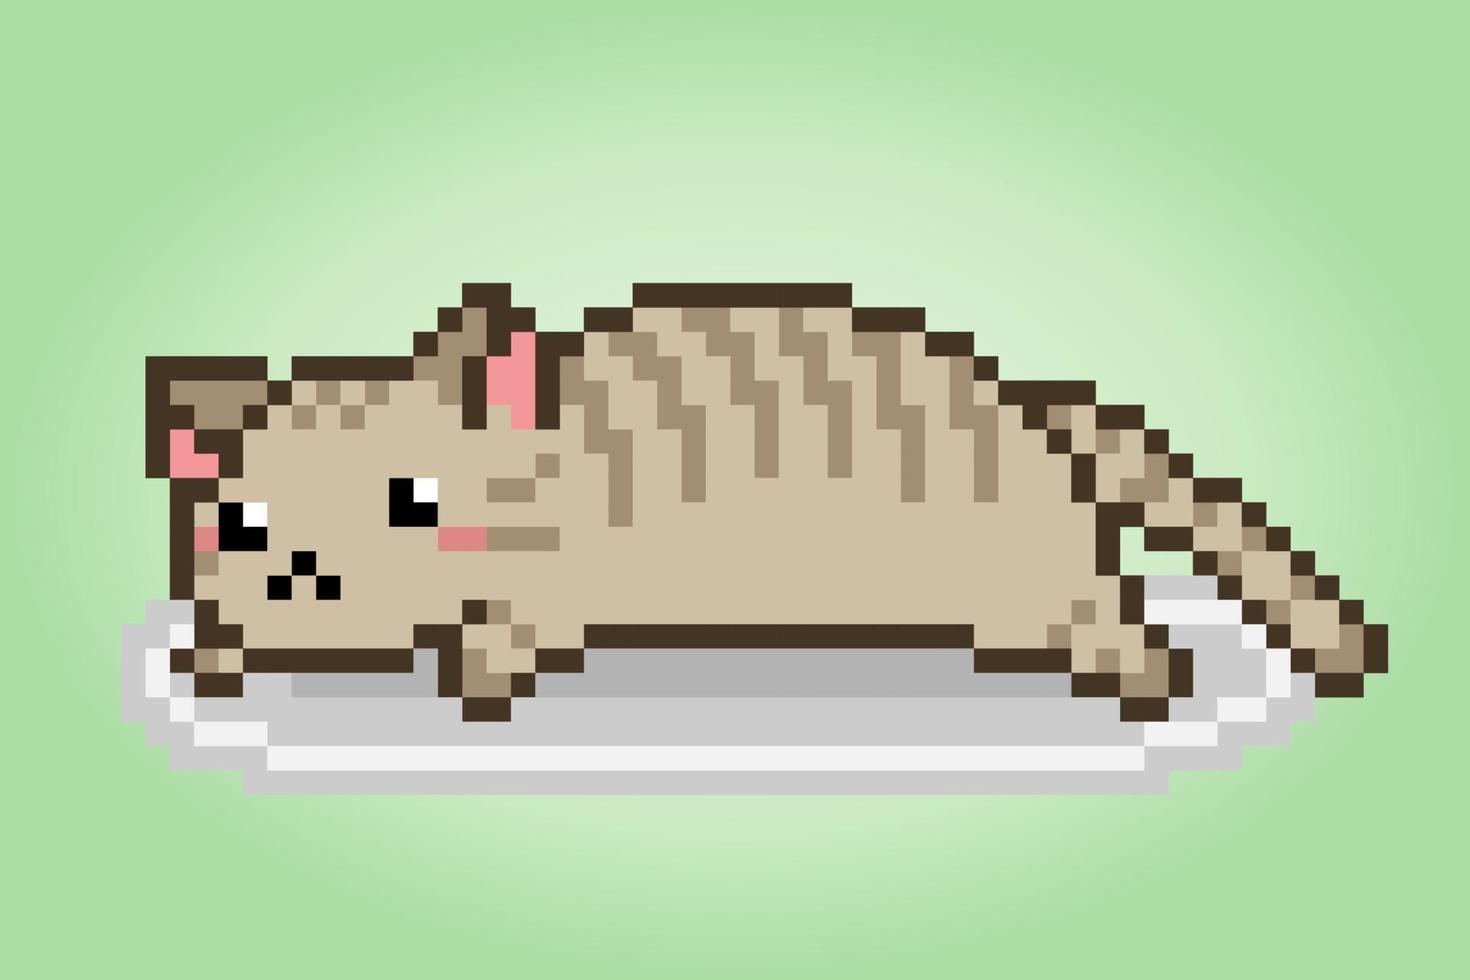 pixel gato preguiçoso de 8 bits. animais para ativos de jogo em ilustração vetorial. vetor